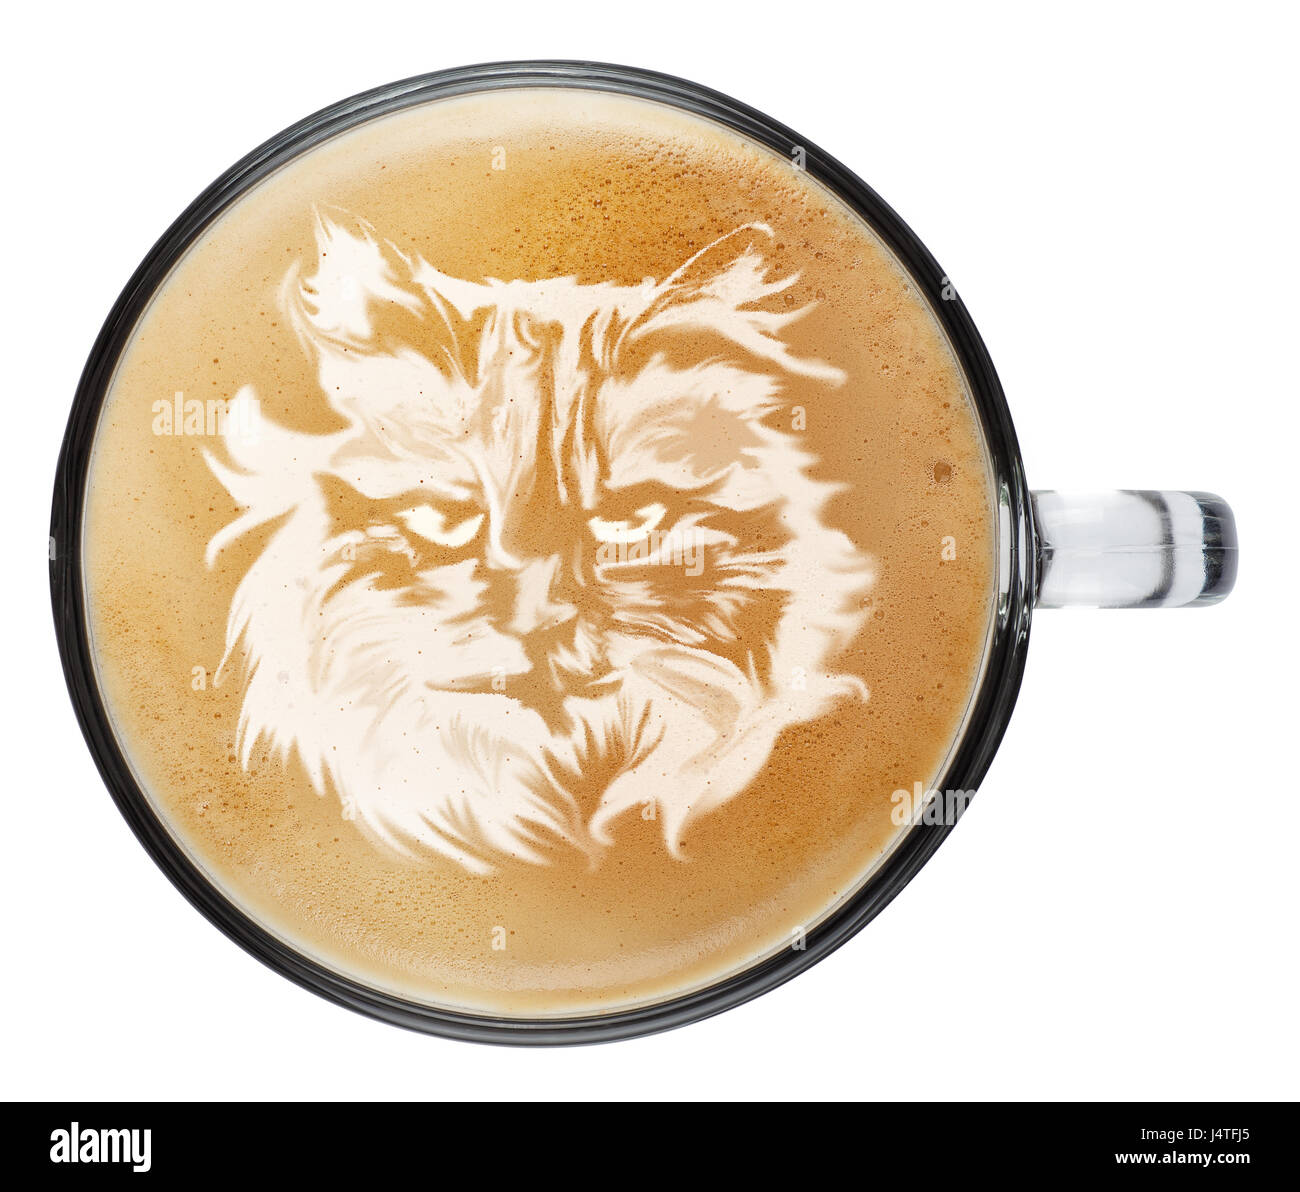 coffee foam cat